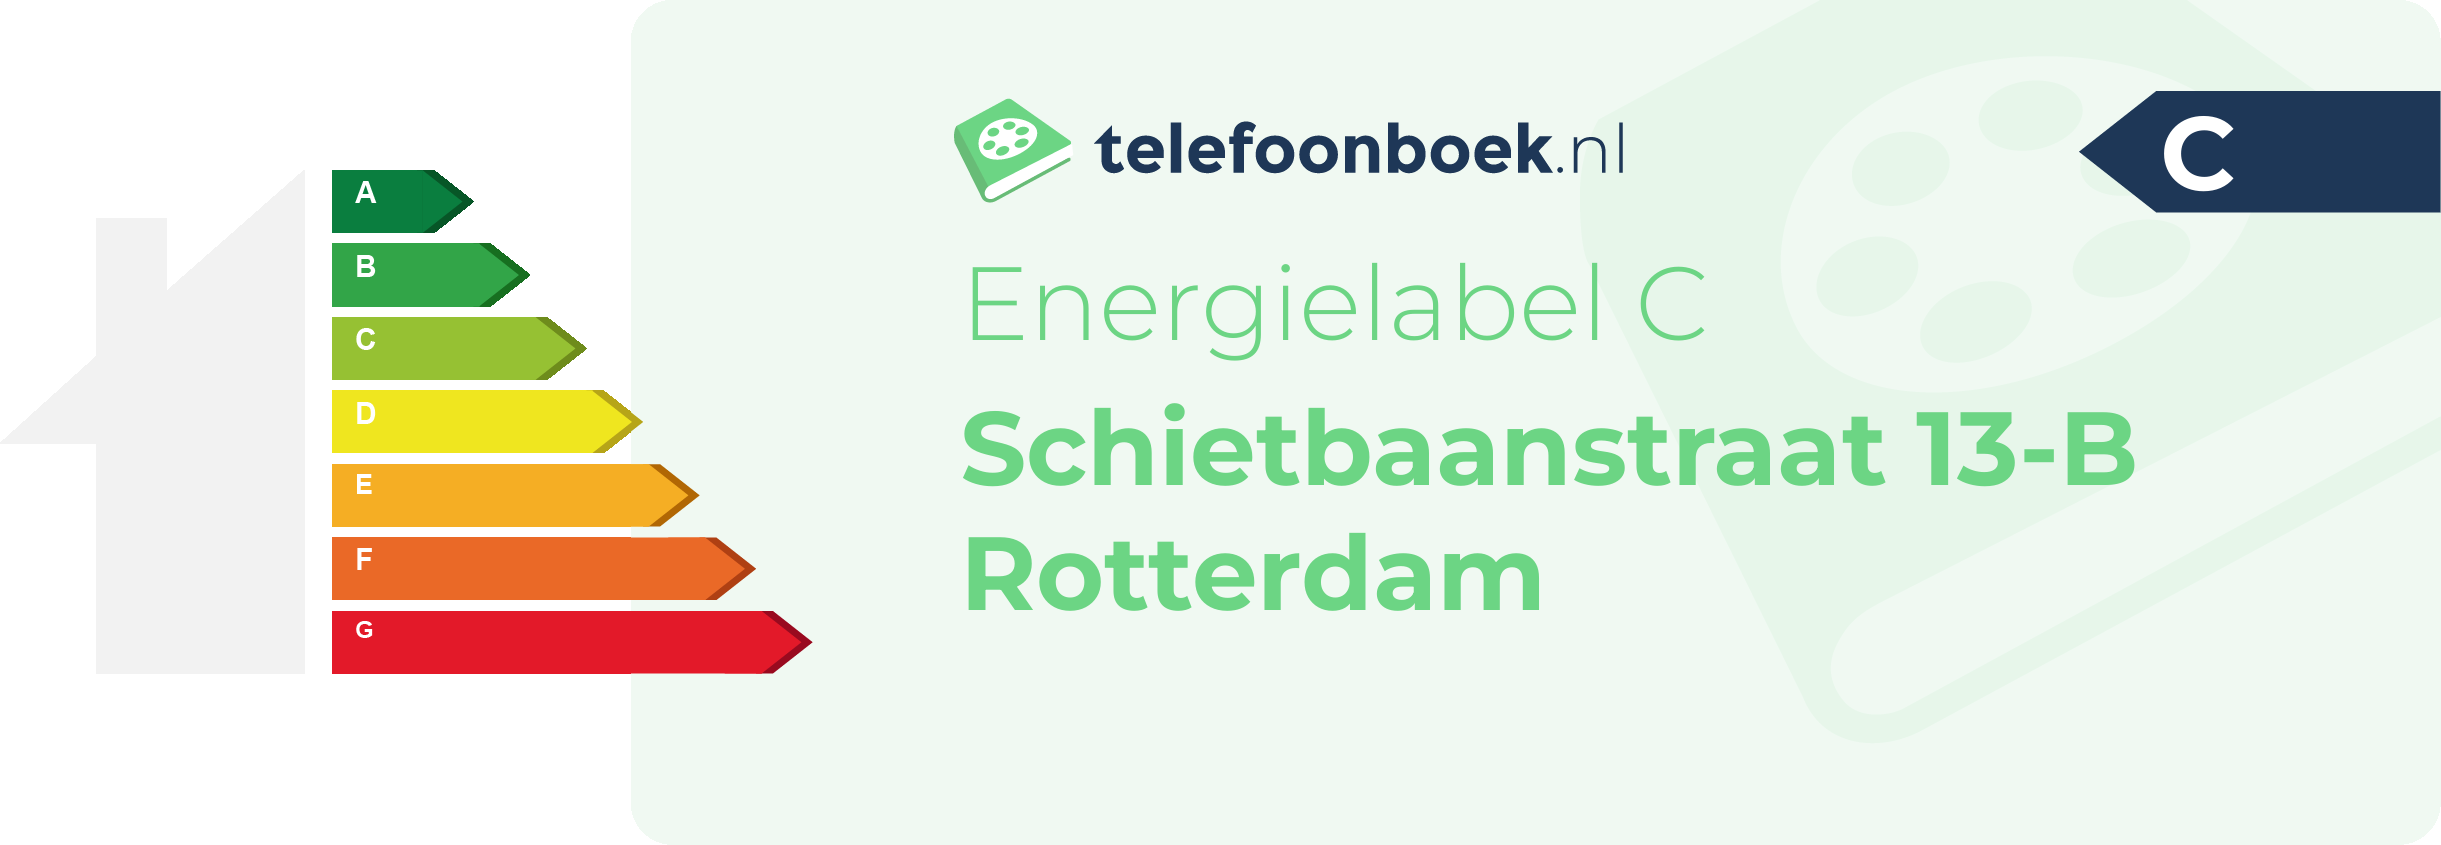 Energielabel Schietbaanstraat 13-B Rotterdam